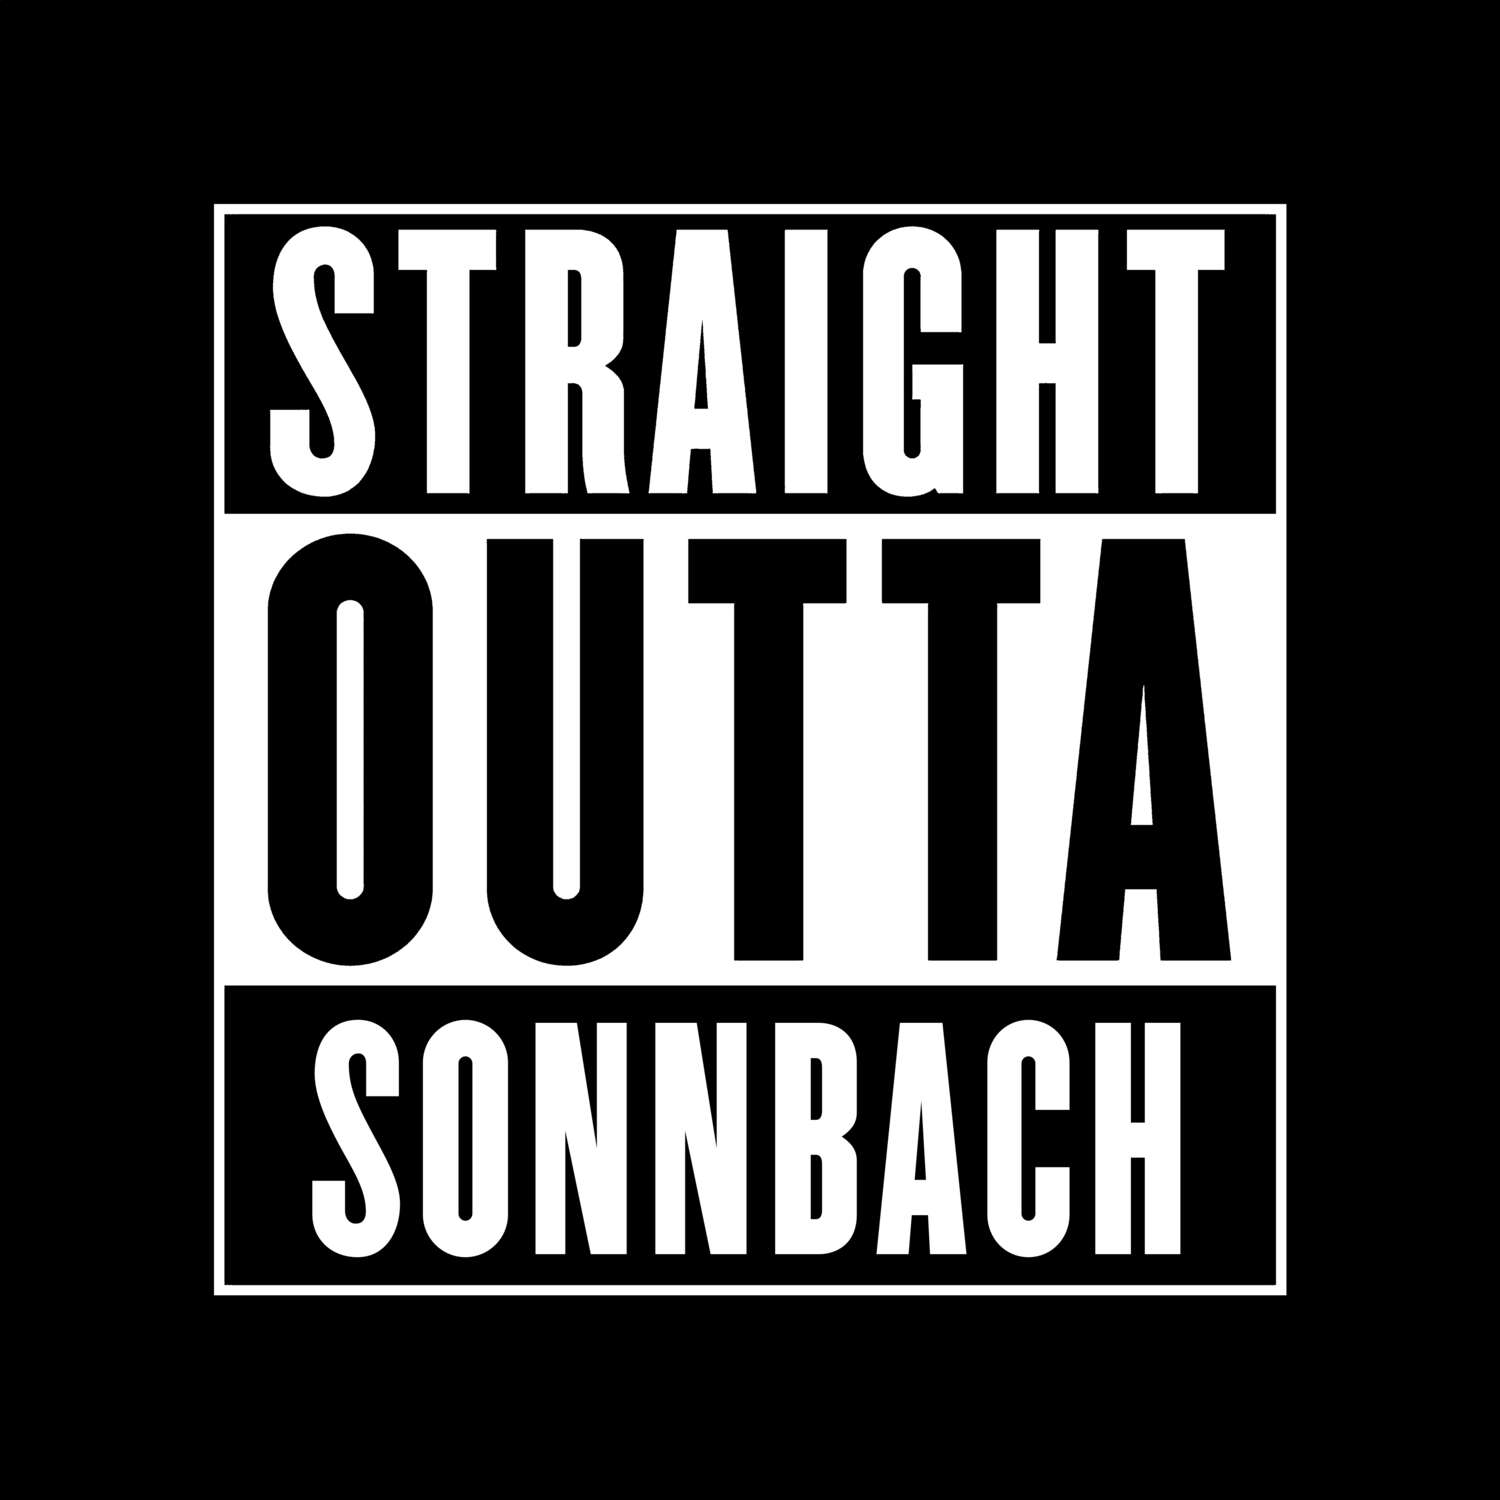 Sonnbach T-Shirt »Straight Outta«